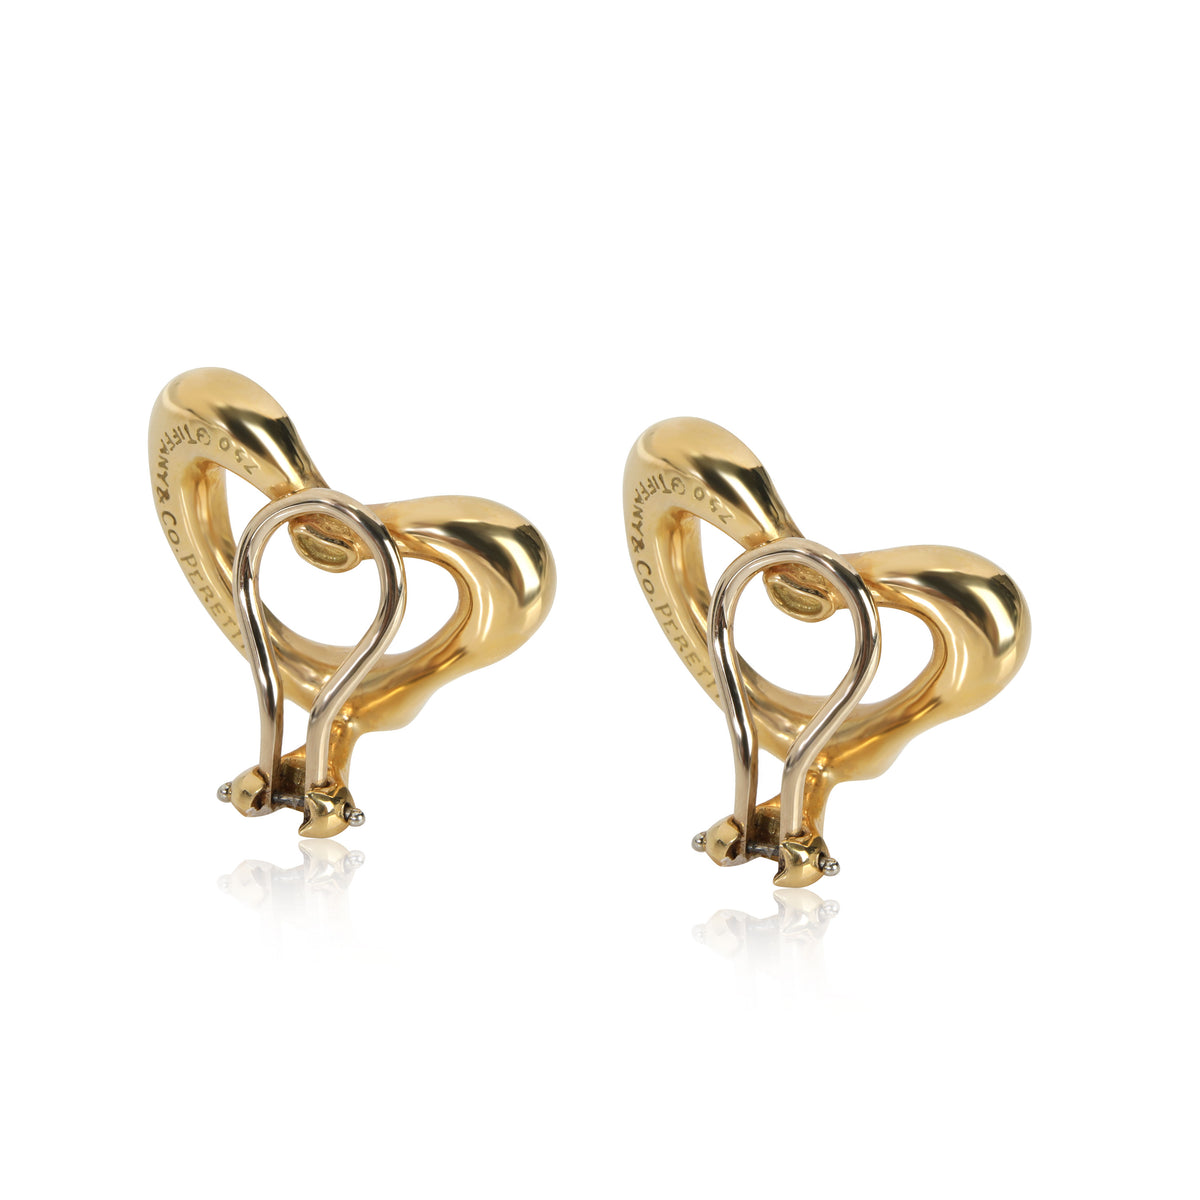 Tiffany & Co. Elsa Peretti Open Heart Clip On Earrings in 18kt Yellow Gold